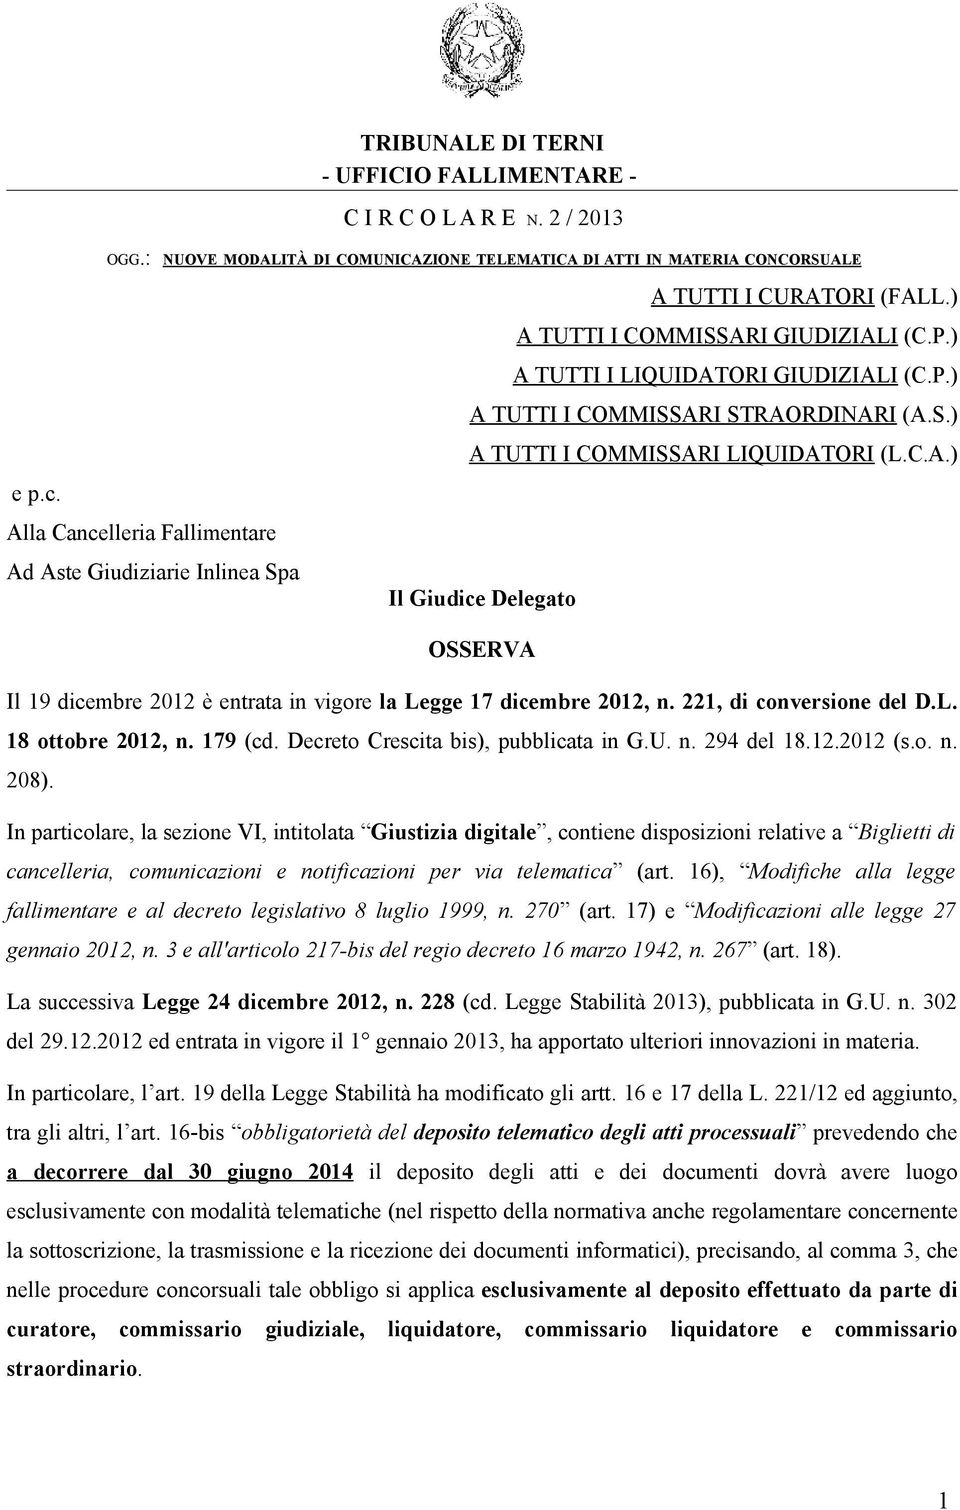 S.) A TUTTI I COMMISSARI LIQUIDATORI (L.C.A.) Il Giudice Delegato OSSERVA Il 19 dicembre 2012 è entrata in vigore la Legge 17 dicembre 2012, n. 221, di conversione del D.L. 18 ottobre 2012, n.